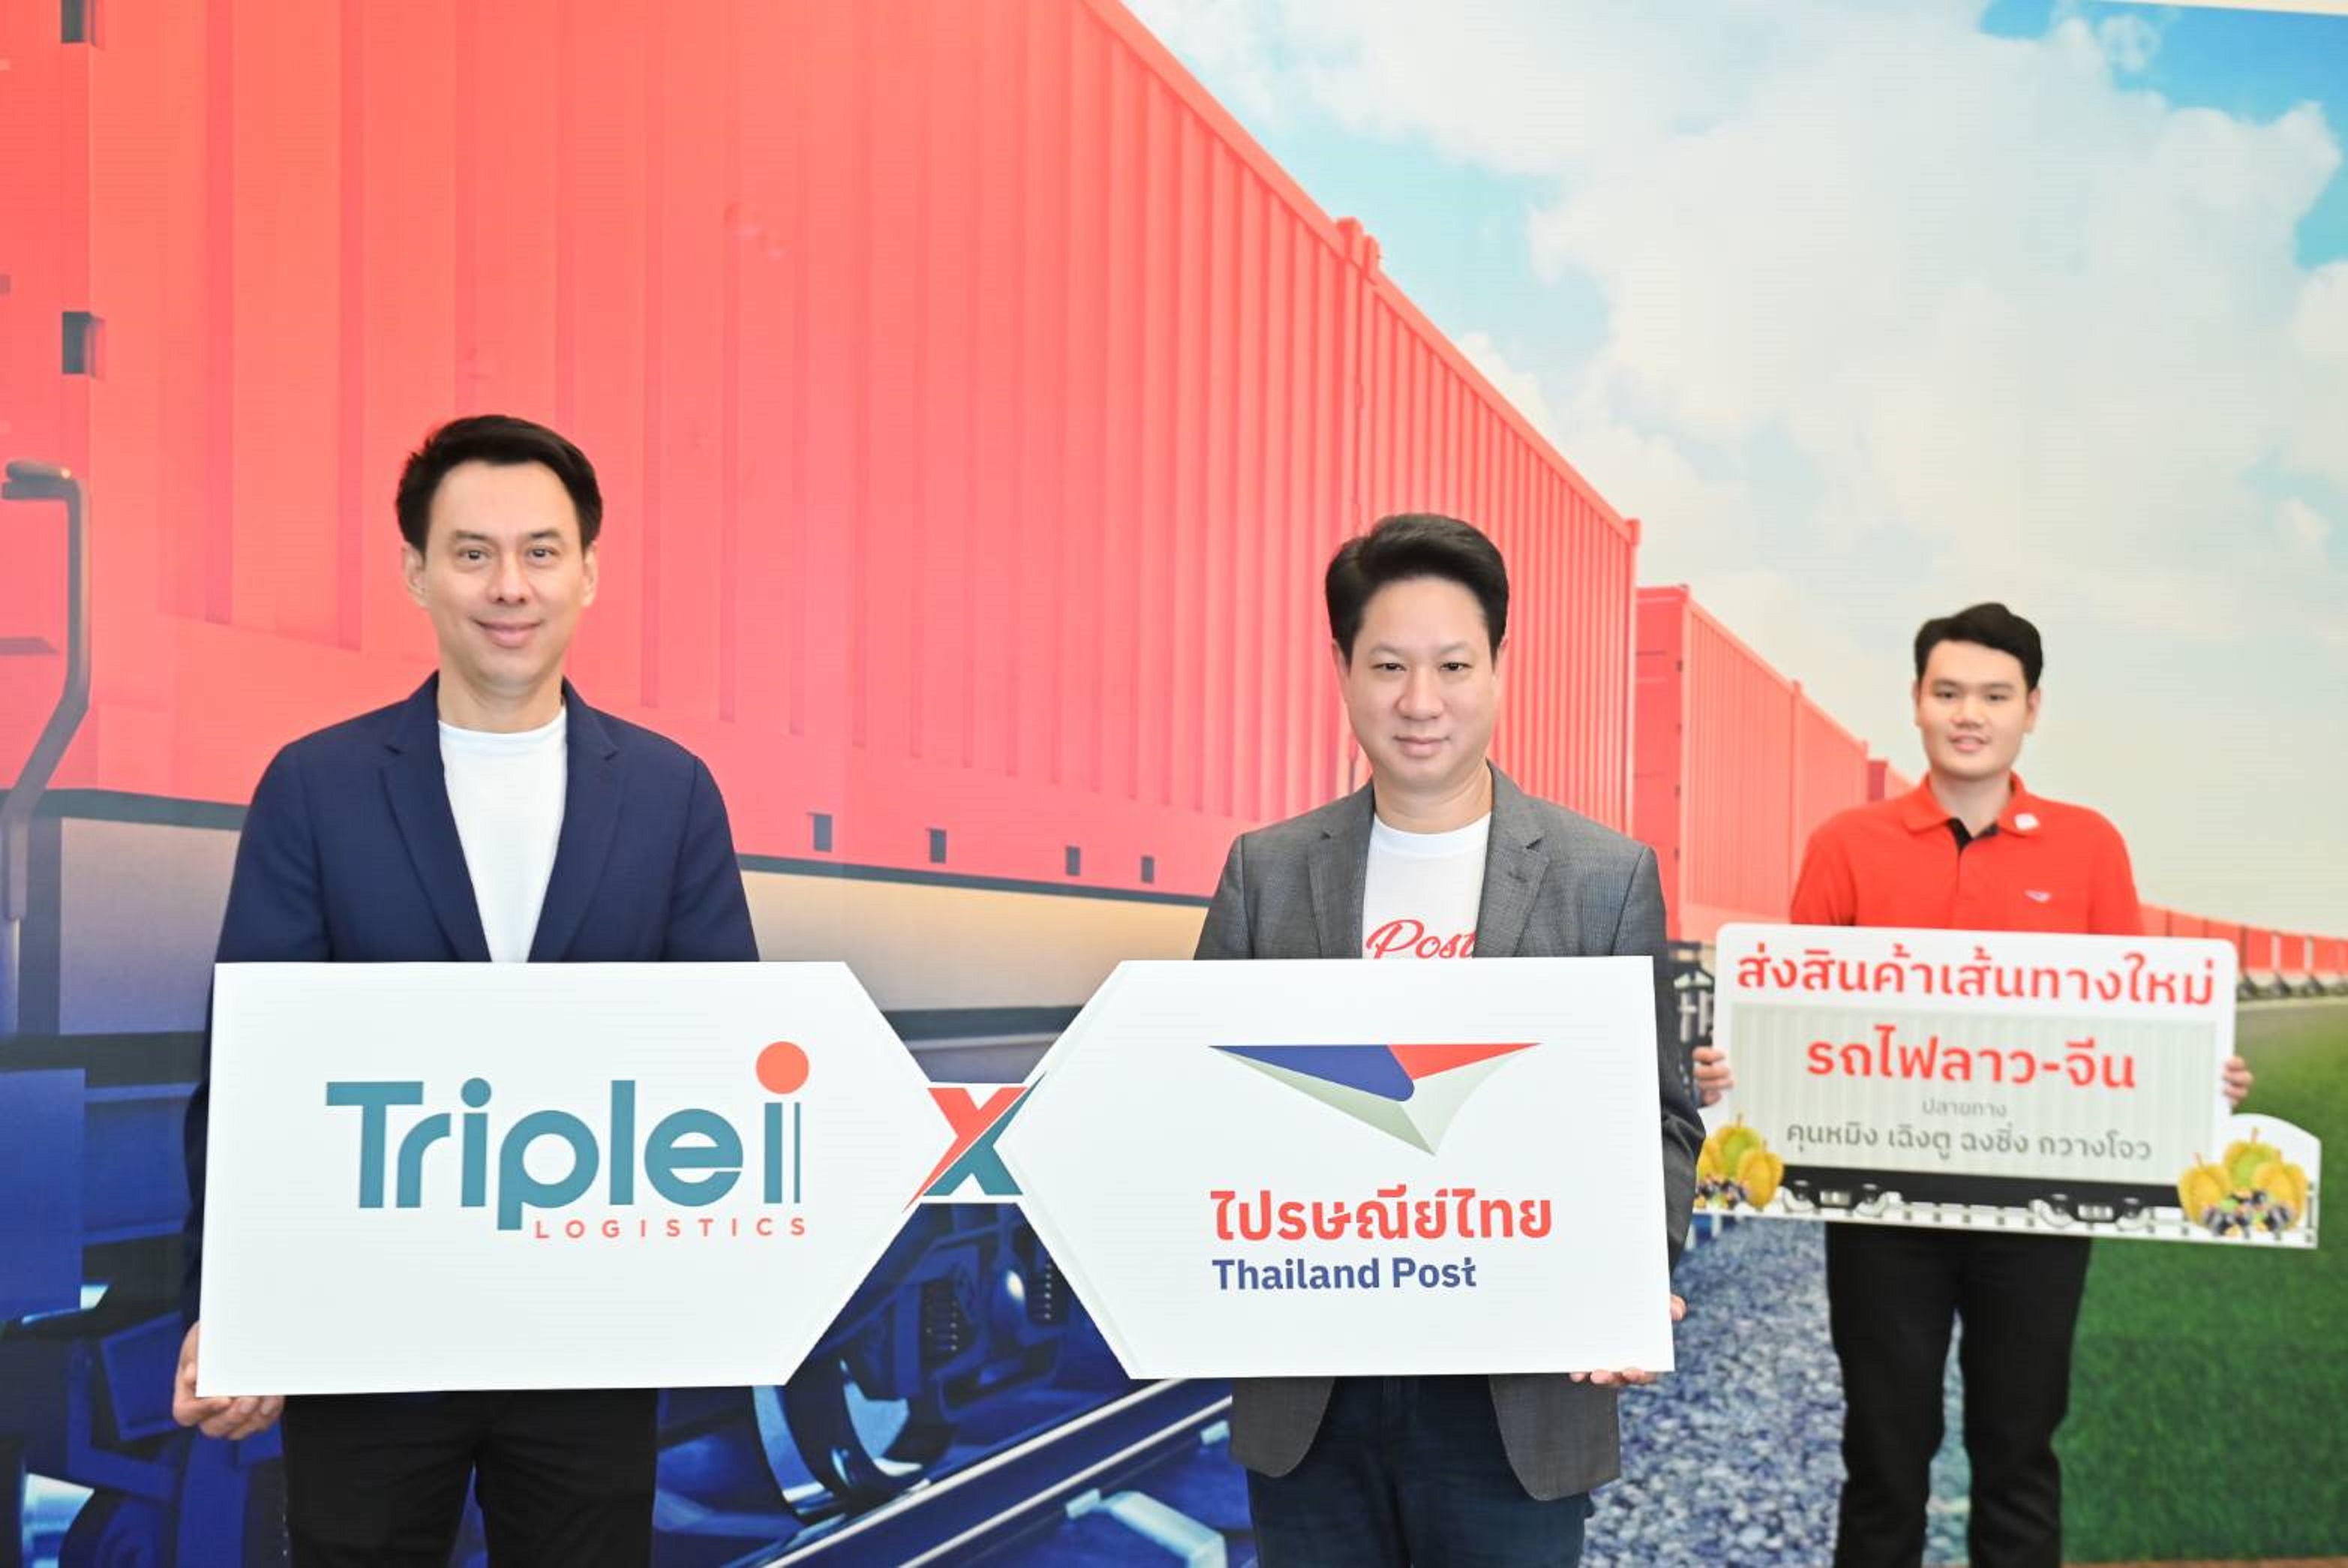 ไปรษณีย์ไทย - ทริพเพิล ไอ ลุยบริการใหม่ส่งทางรางไปจีน เน้นส่งออกผลไม้และอุปกรณ์อิเล็กทรอนิกส์ นำร่อง 4 เส้นทาง เริ่ม 1 เมษาฯ นี้